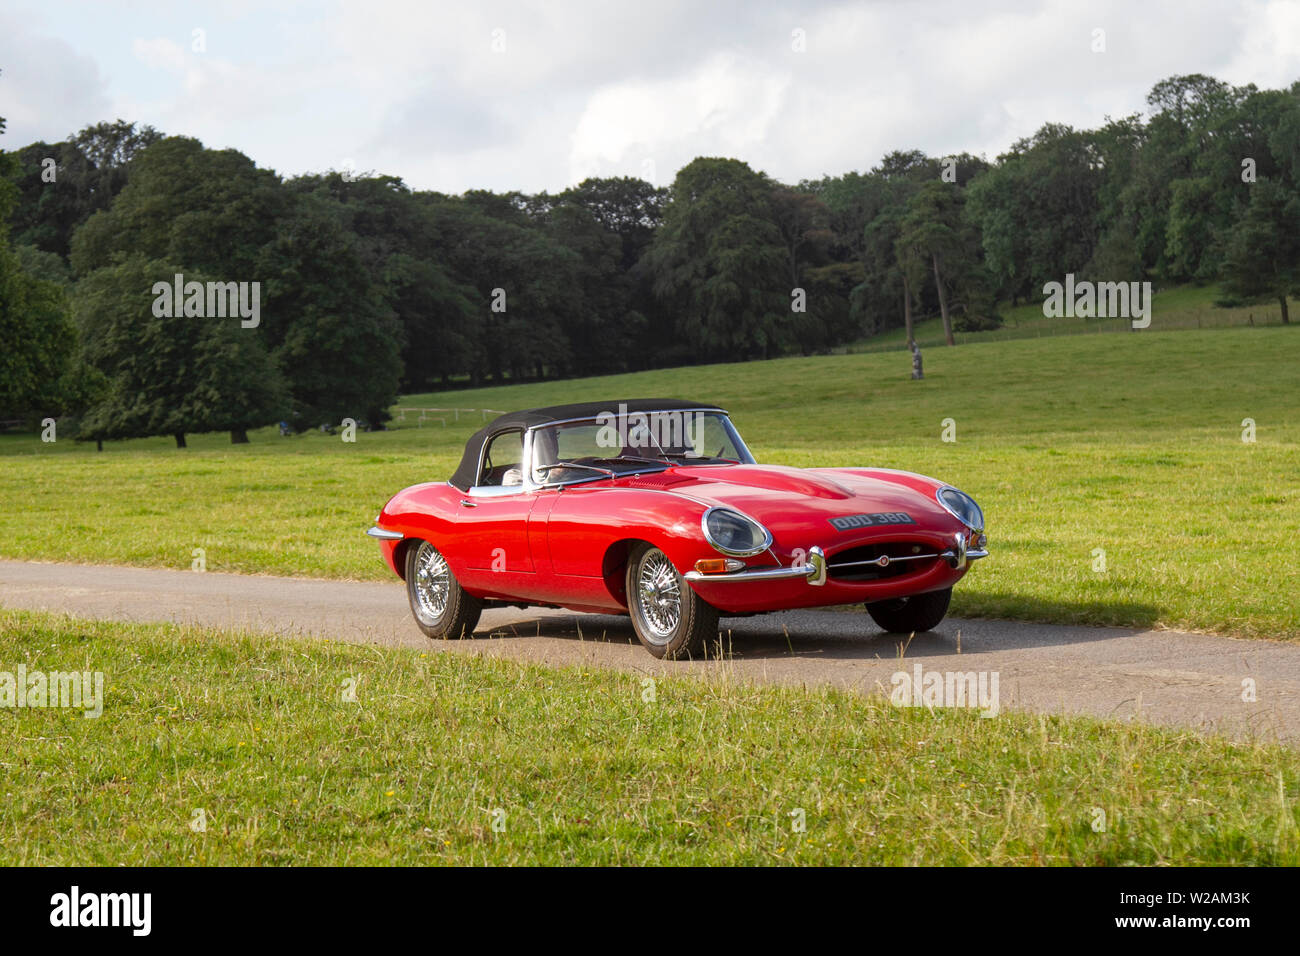 1962 60s anni Sessanta Rosso British Classic Jaguar 'e' tipo 3781cc Roadster convertibile in guida in un parco boschivo, Regno Unito Foto Stock